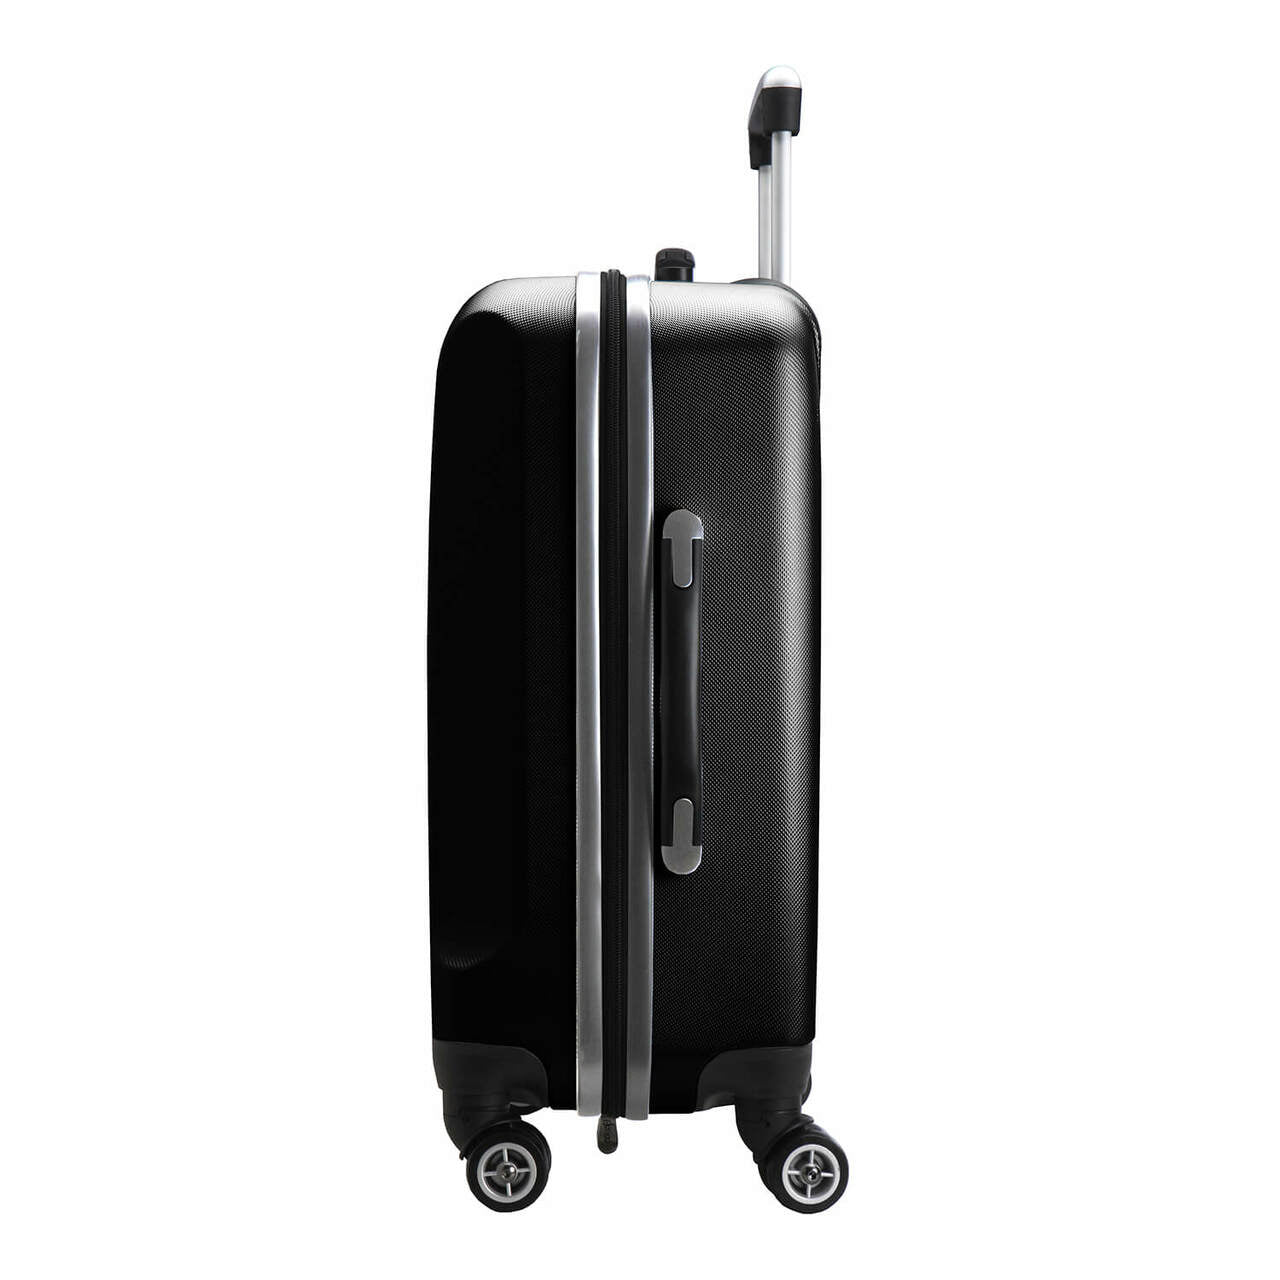 Las Vegas Raiders 20" Hardcase Luggage Carry-on Spinner